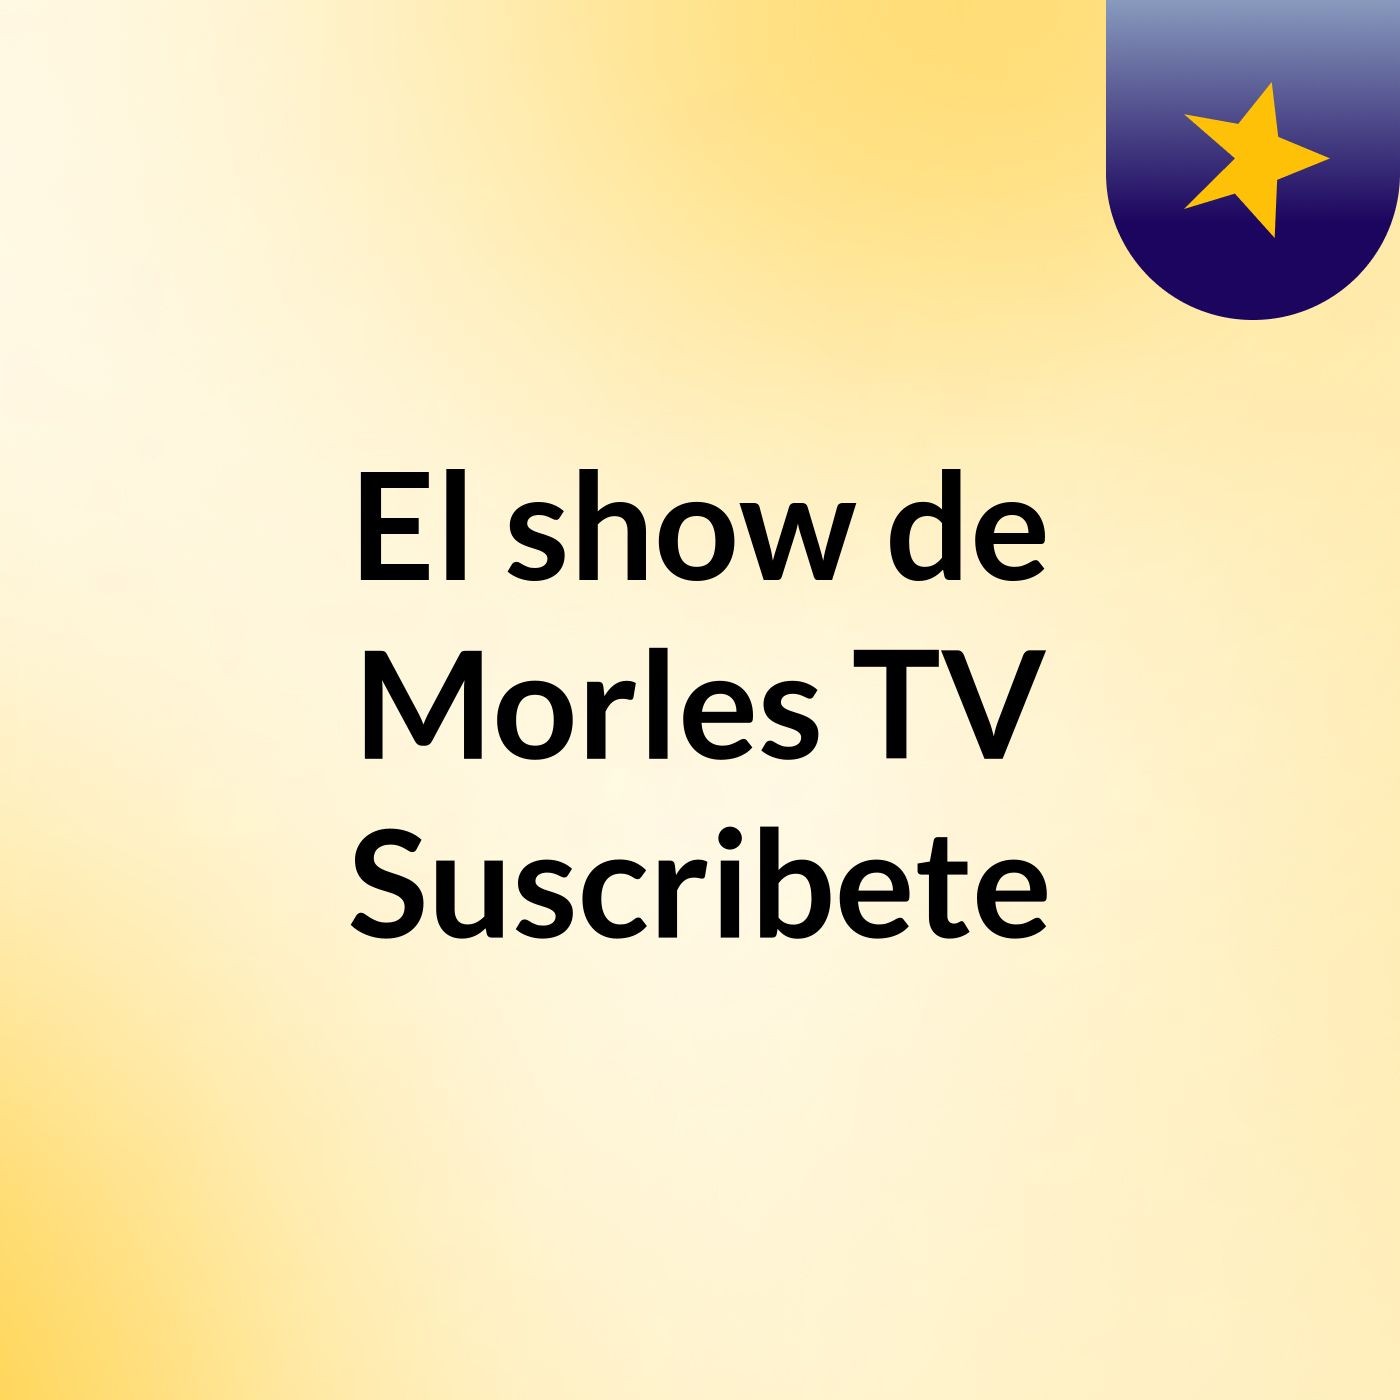 El show de Morles TV Suscribete